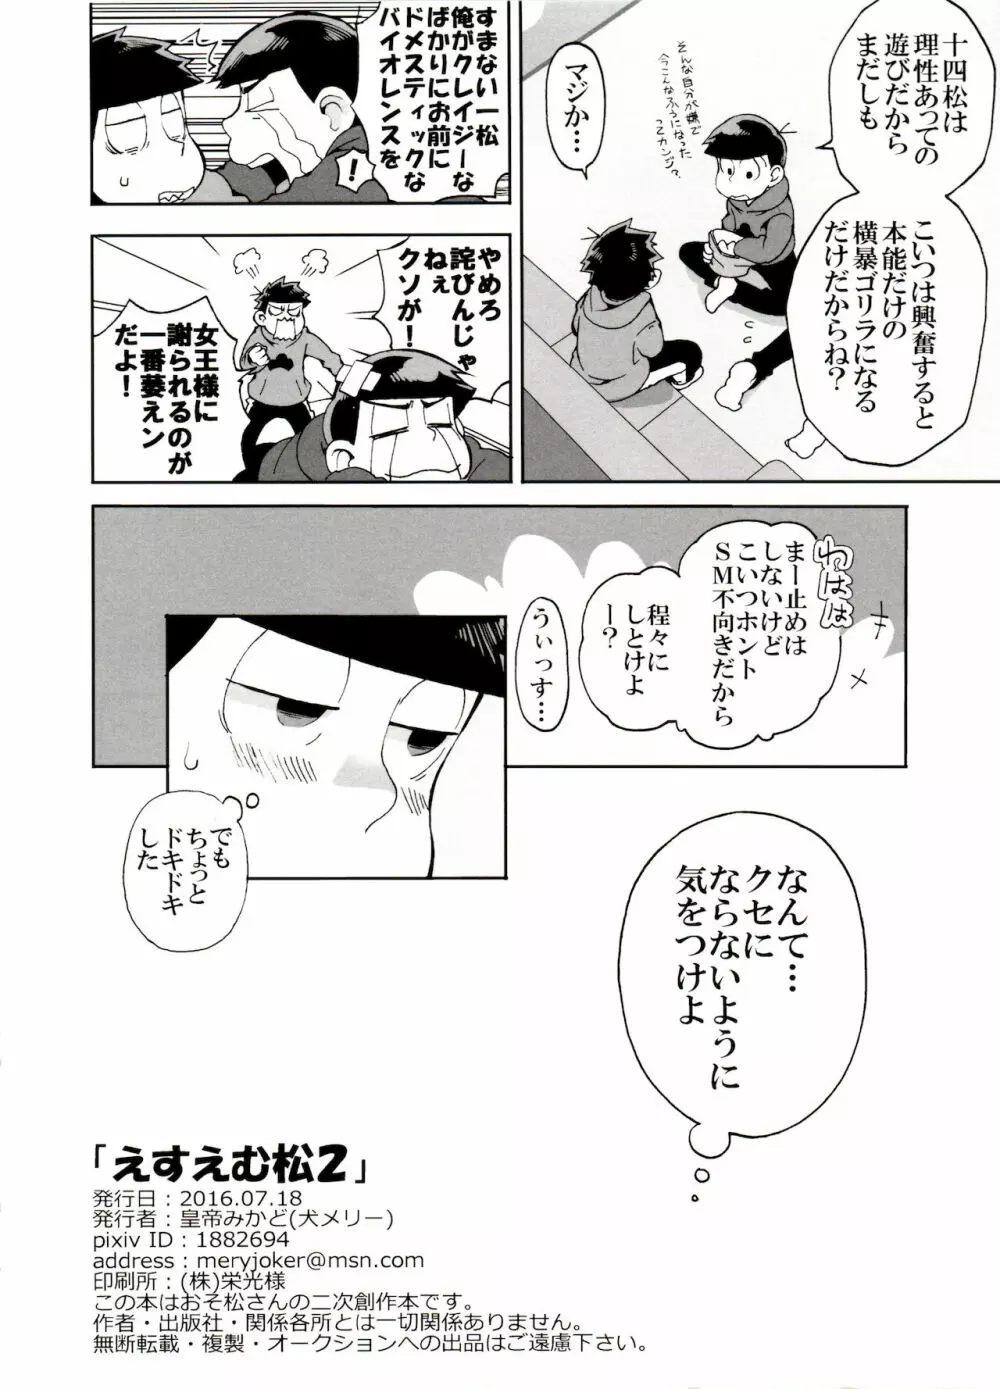 えすえむ松2 - page24